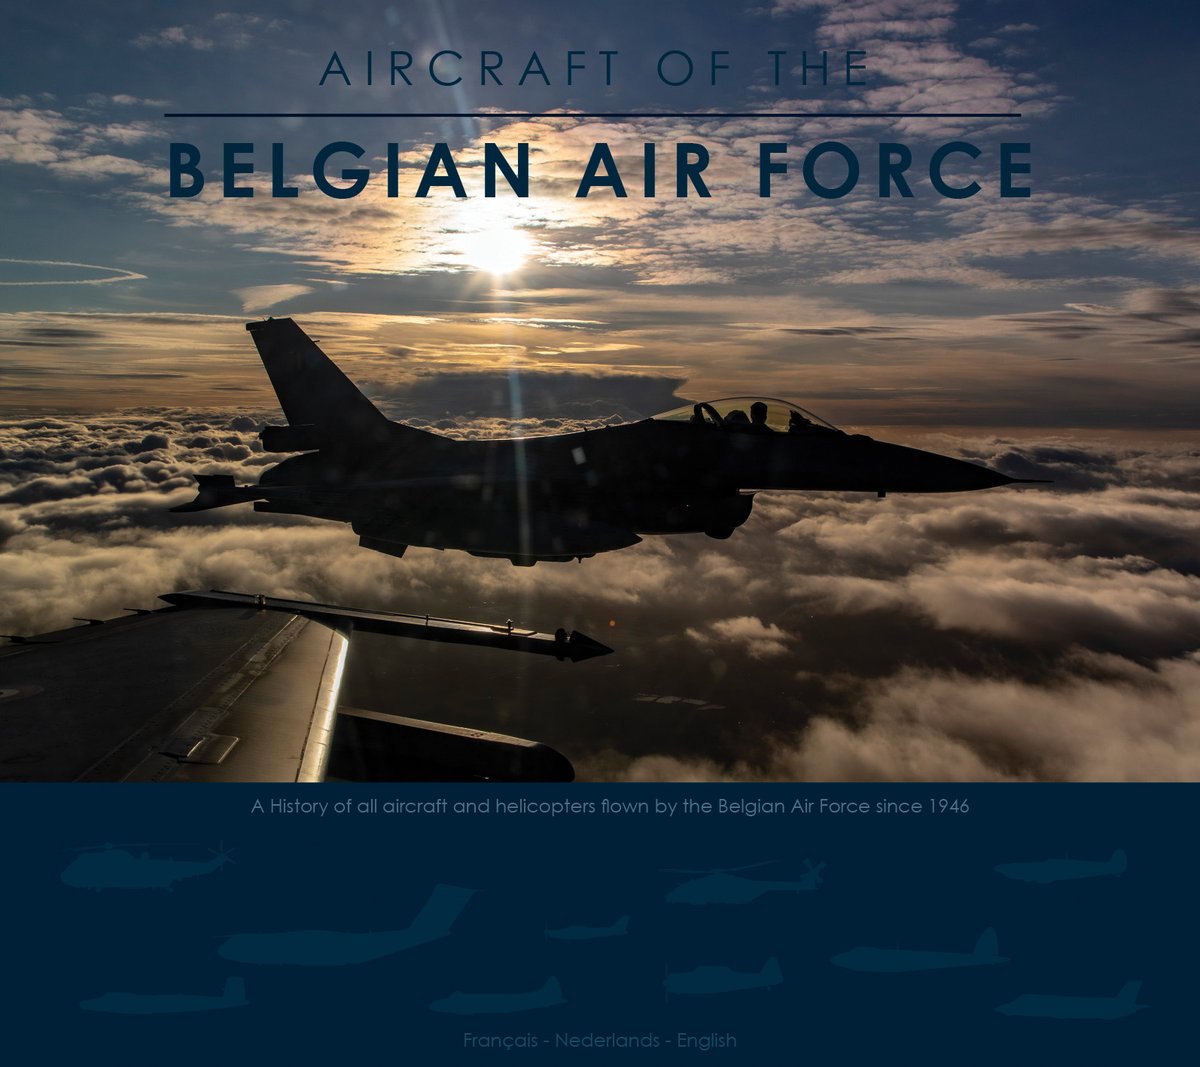 Belgian Air Force🇧🇪